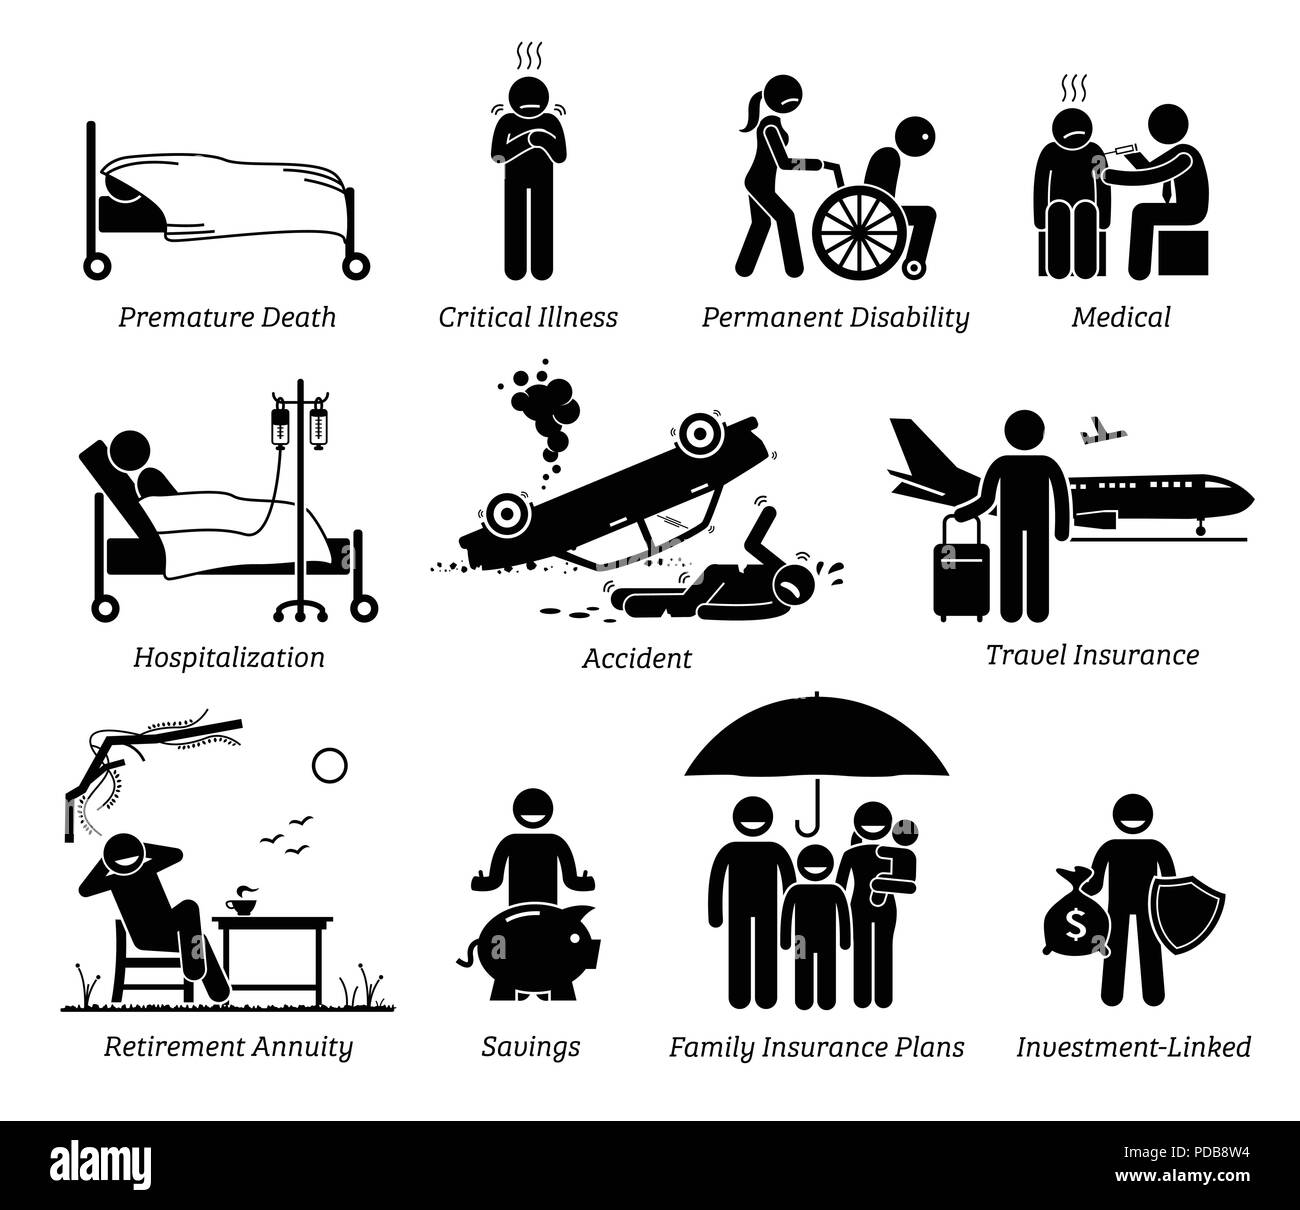 Assicurazione sulla vita di protezione. Stick figure illustrano la vita protezione assicurativa per la prematura morte, malattia grave, disabilità permanente, medico. Illustrazione Vettoriale